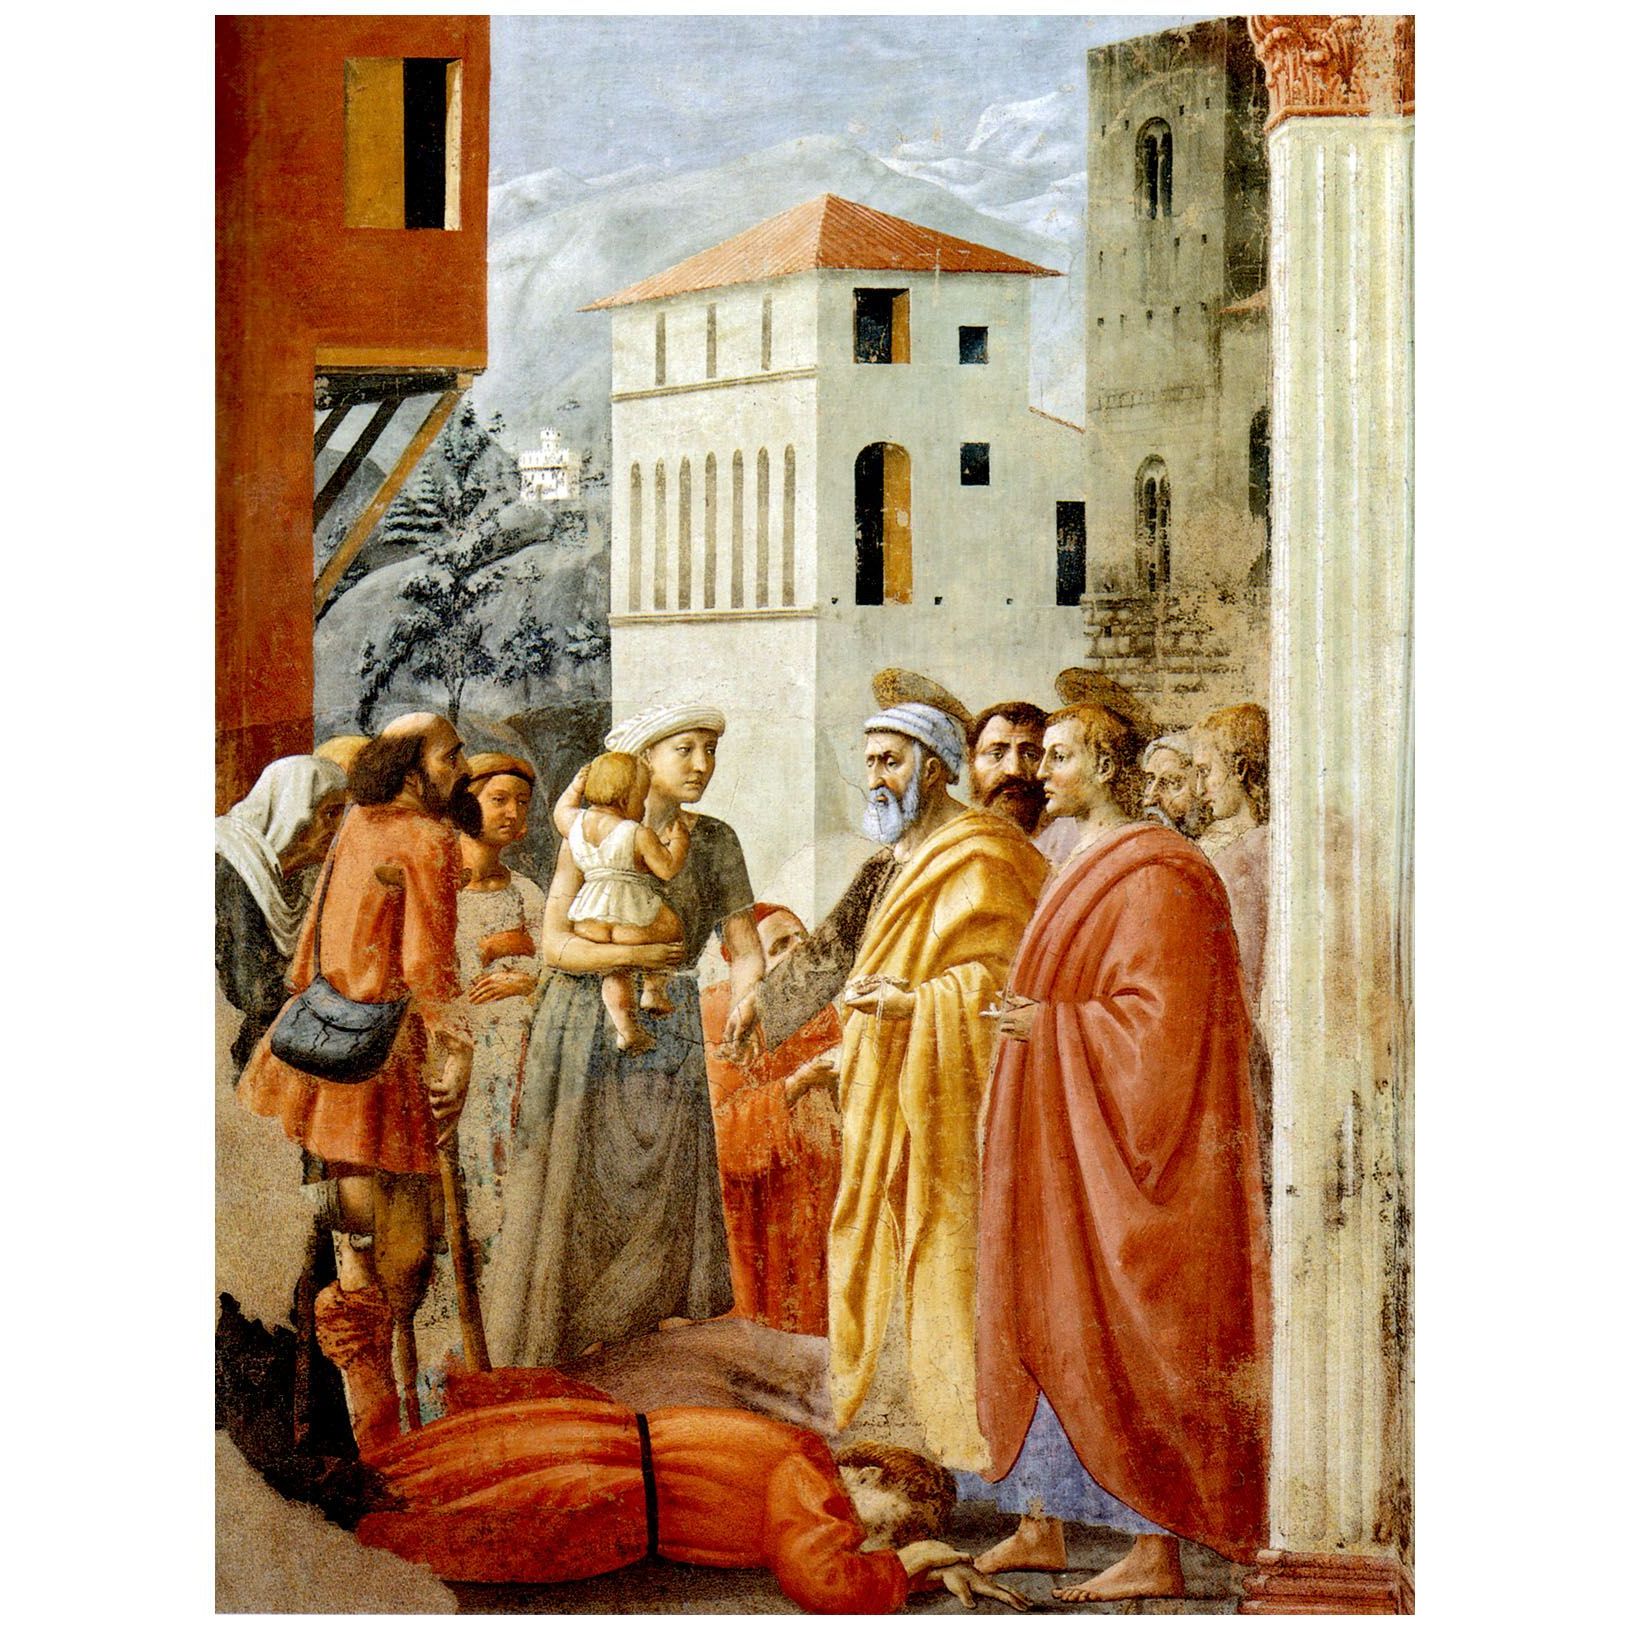 Мазаччо. Раздача имущества и смерть Анании. 1427. Капелла Бранкаччи, Флоренция